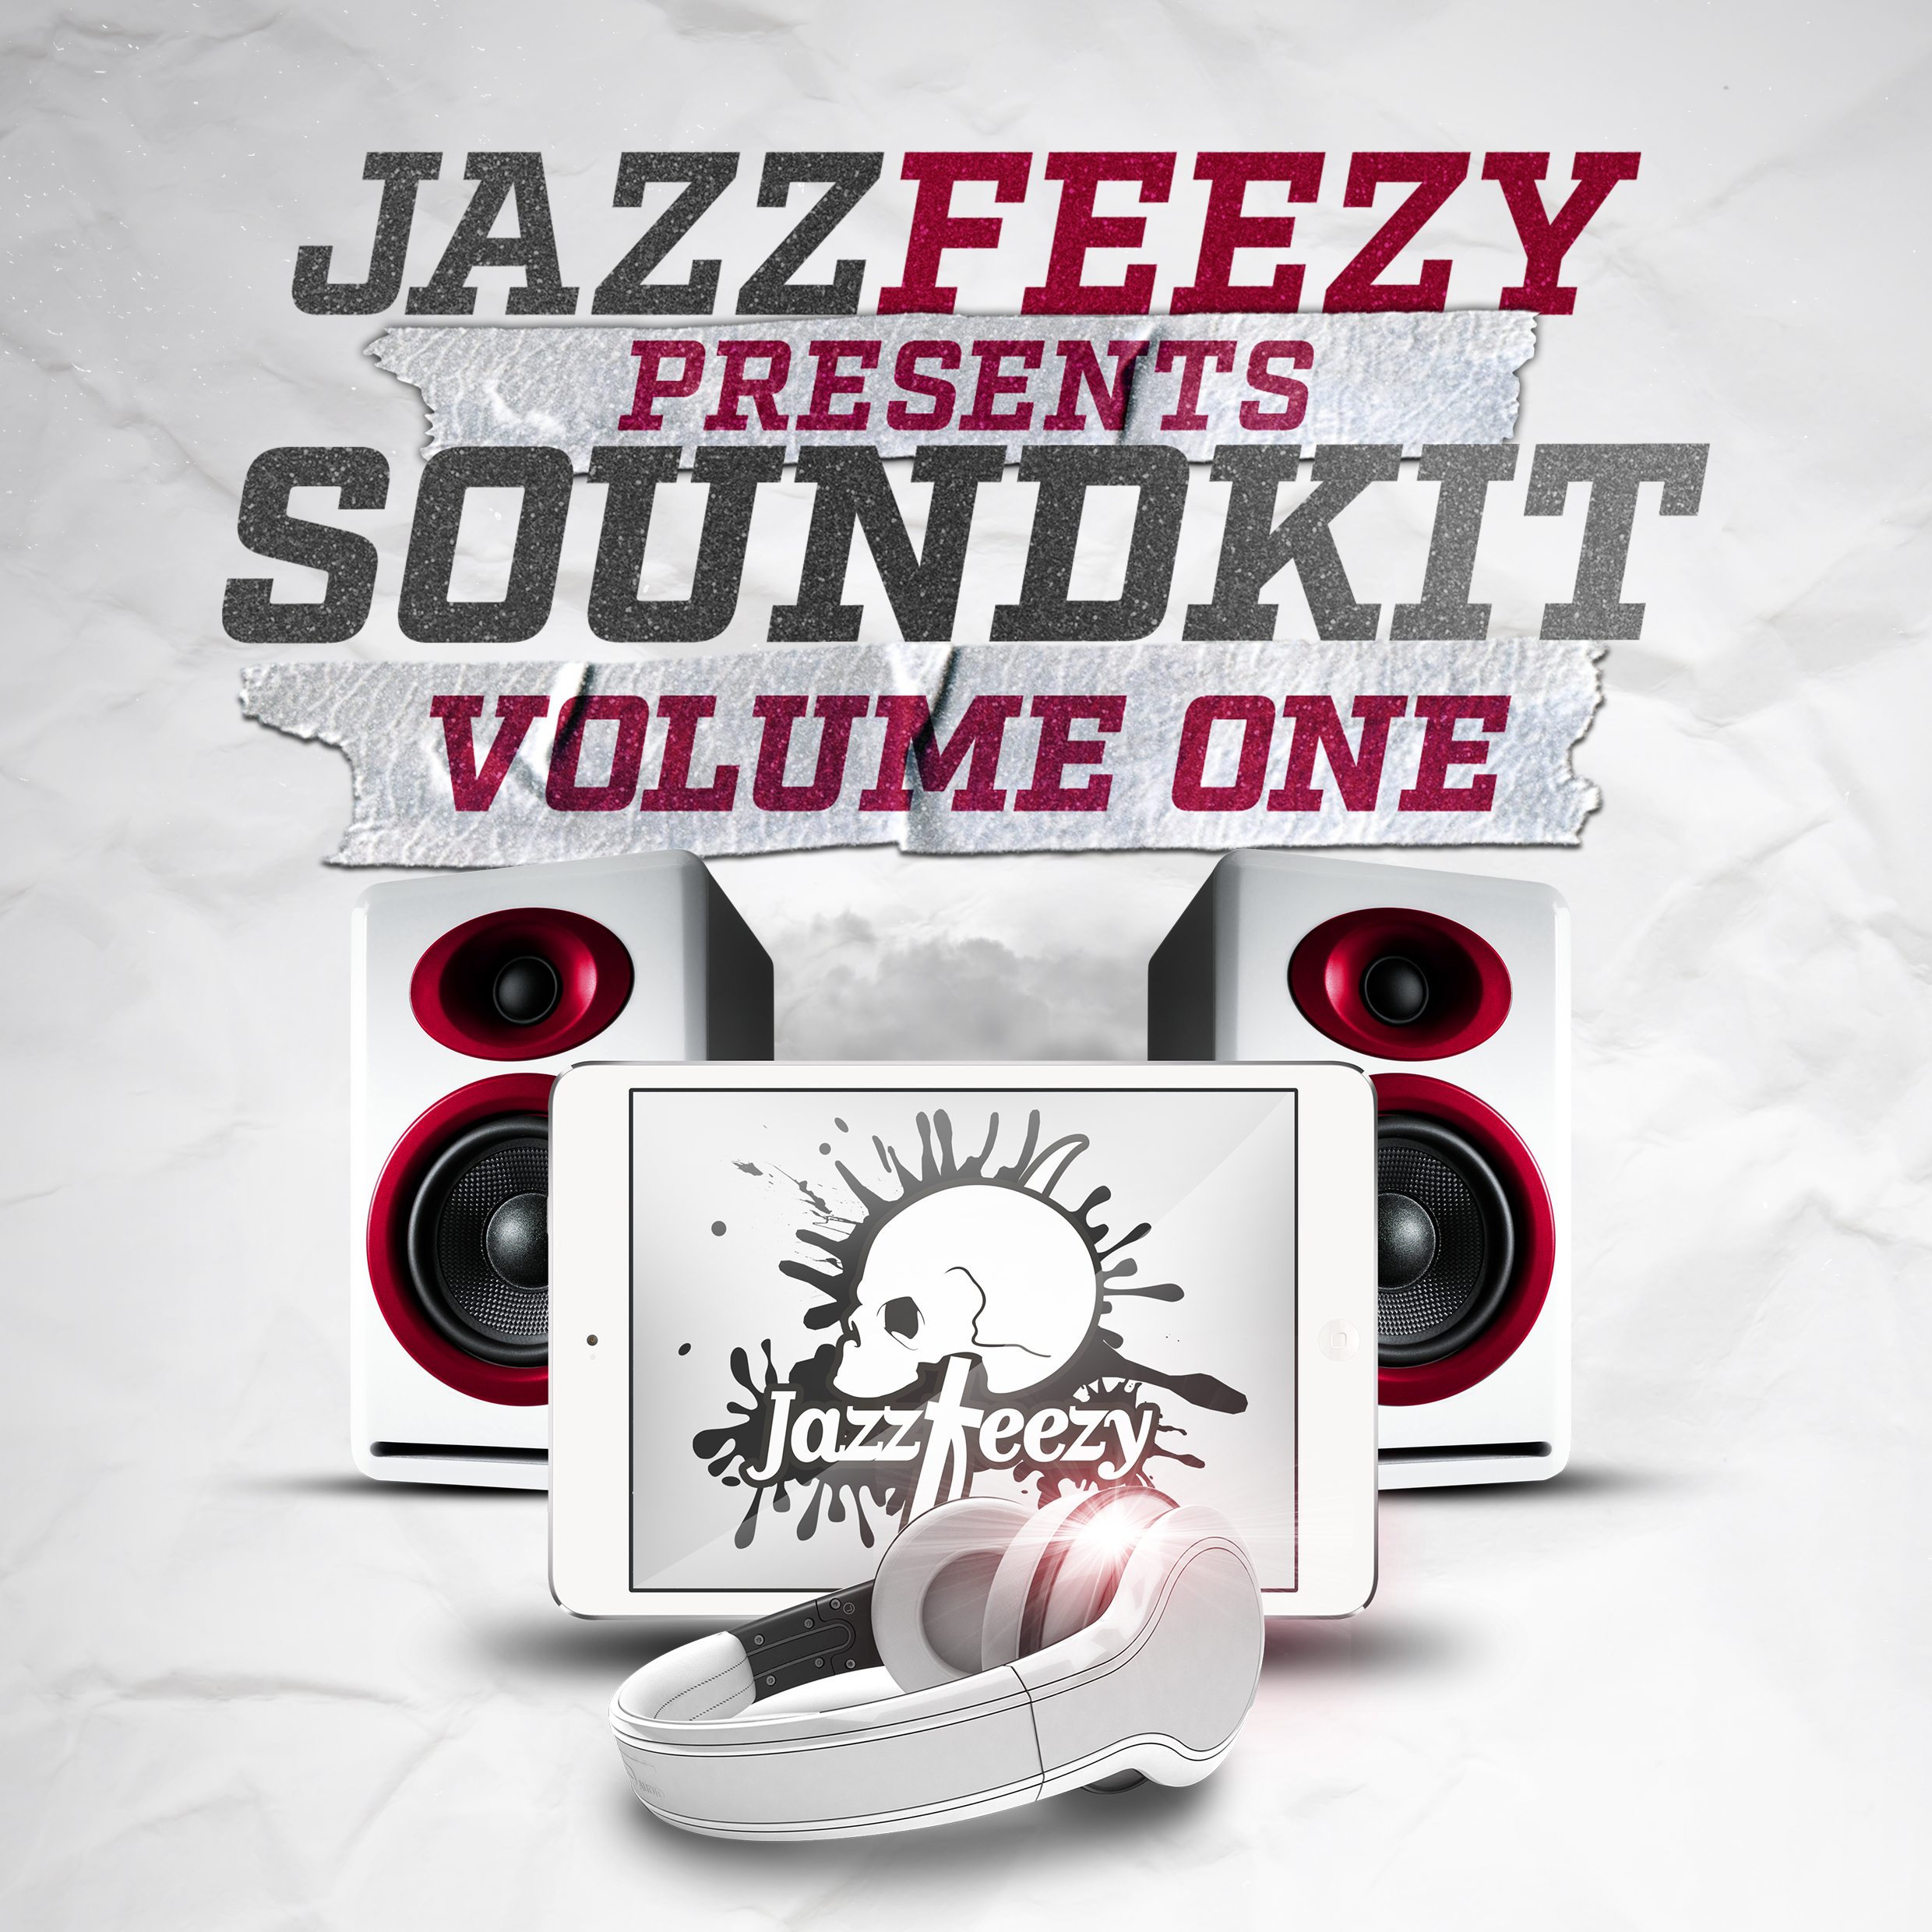 Jazzfeezy Sound Kit vol. 1